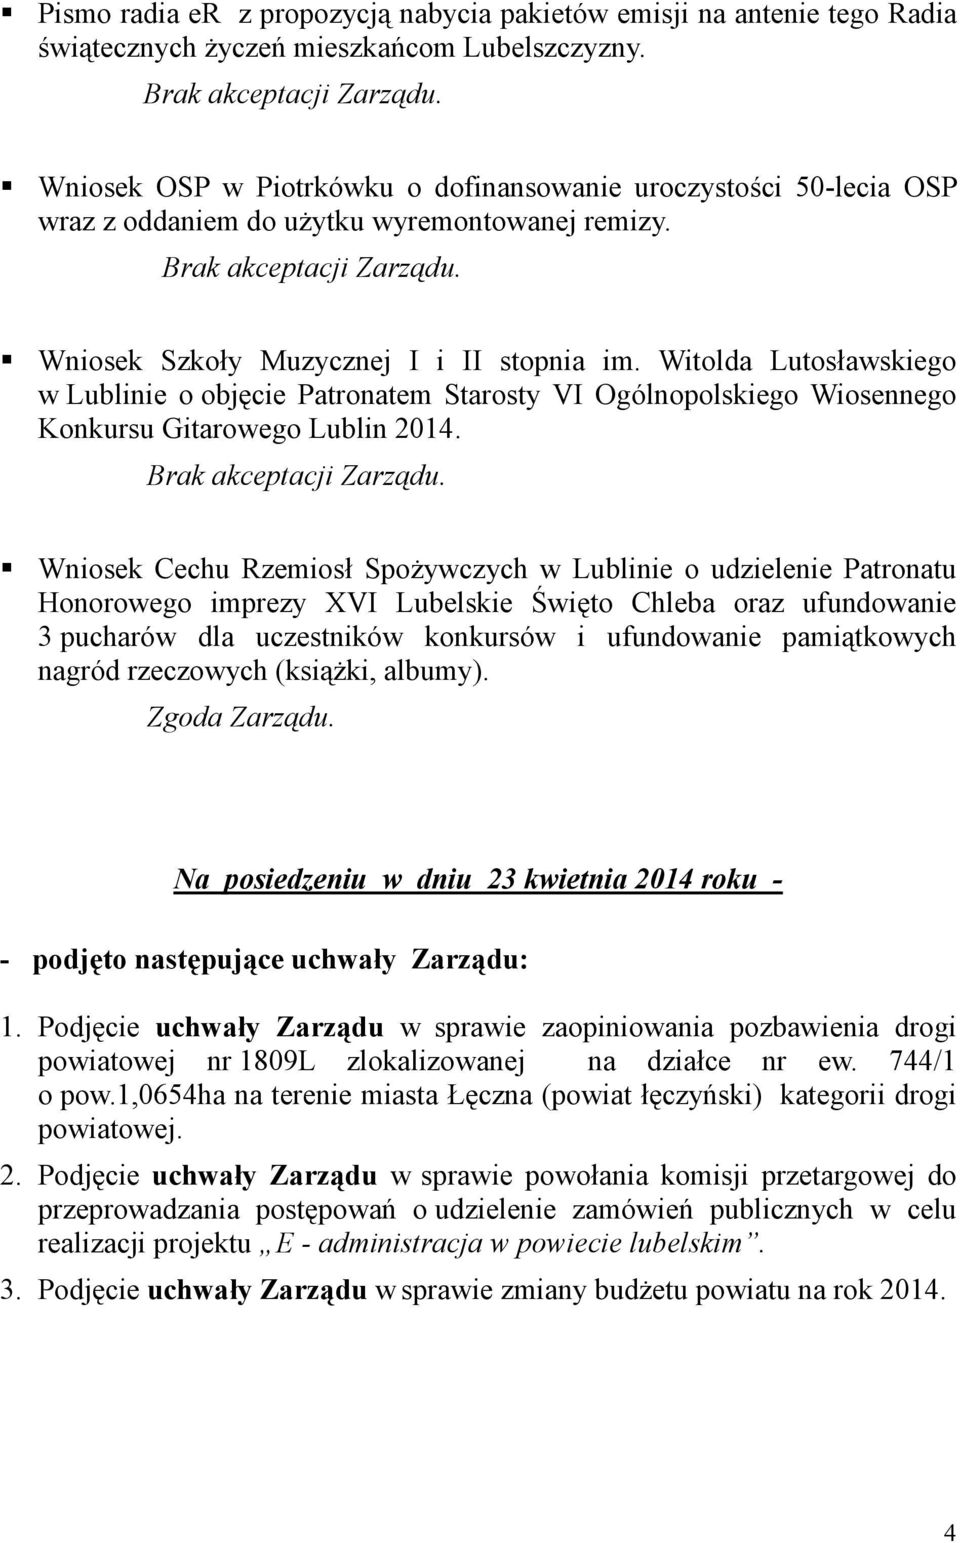 Witolda Lutosławskiego w Lublinie o objęcie Patronatem Starosty VI Ogólnopolskiego Wiosennego Konkursu Gitarowego Lublin 2014.